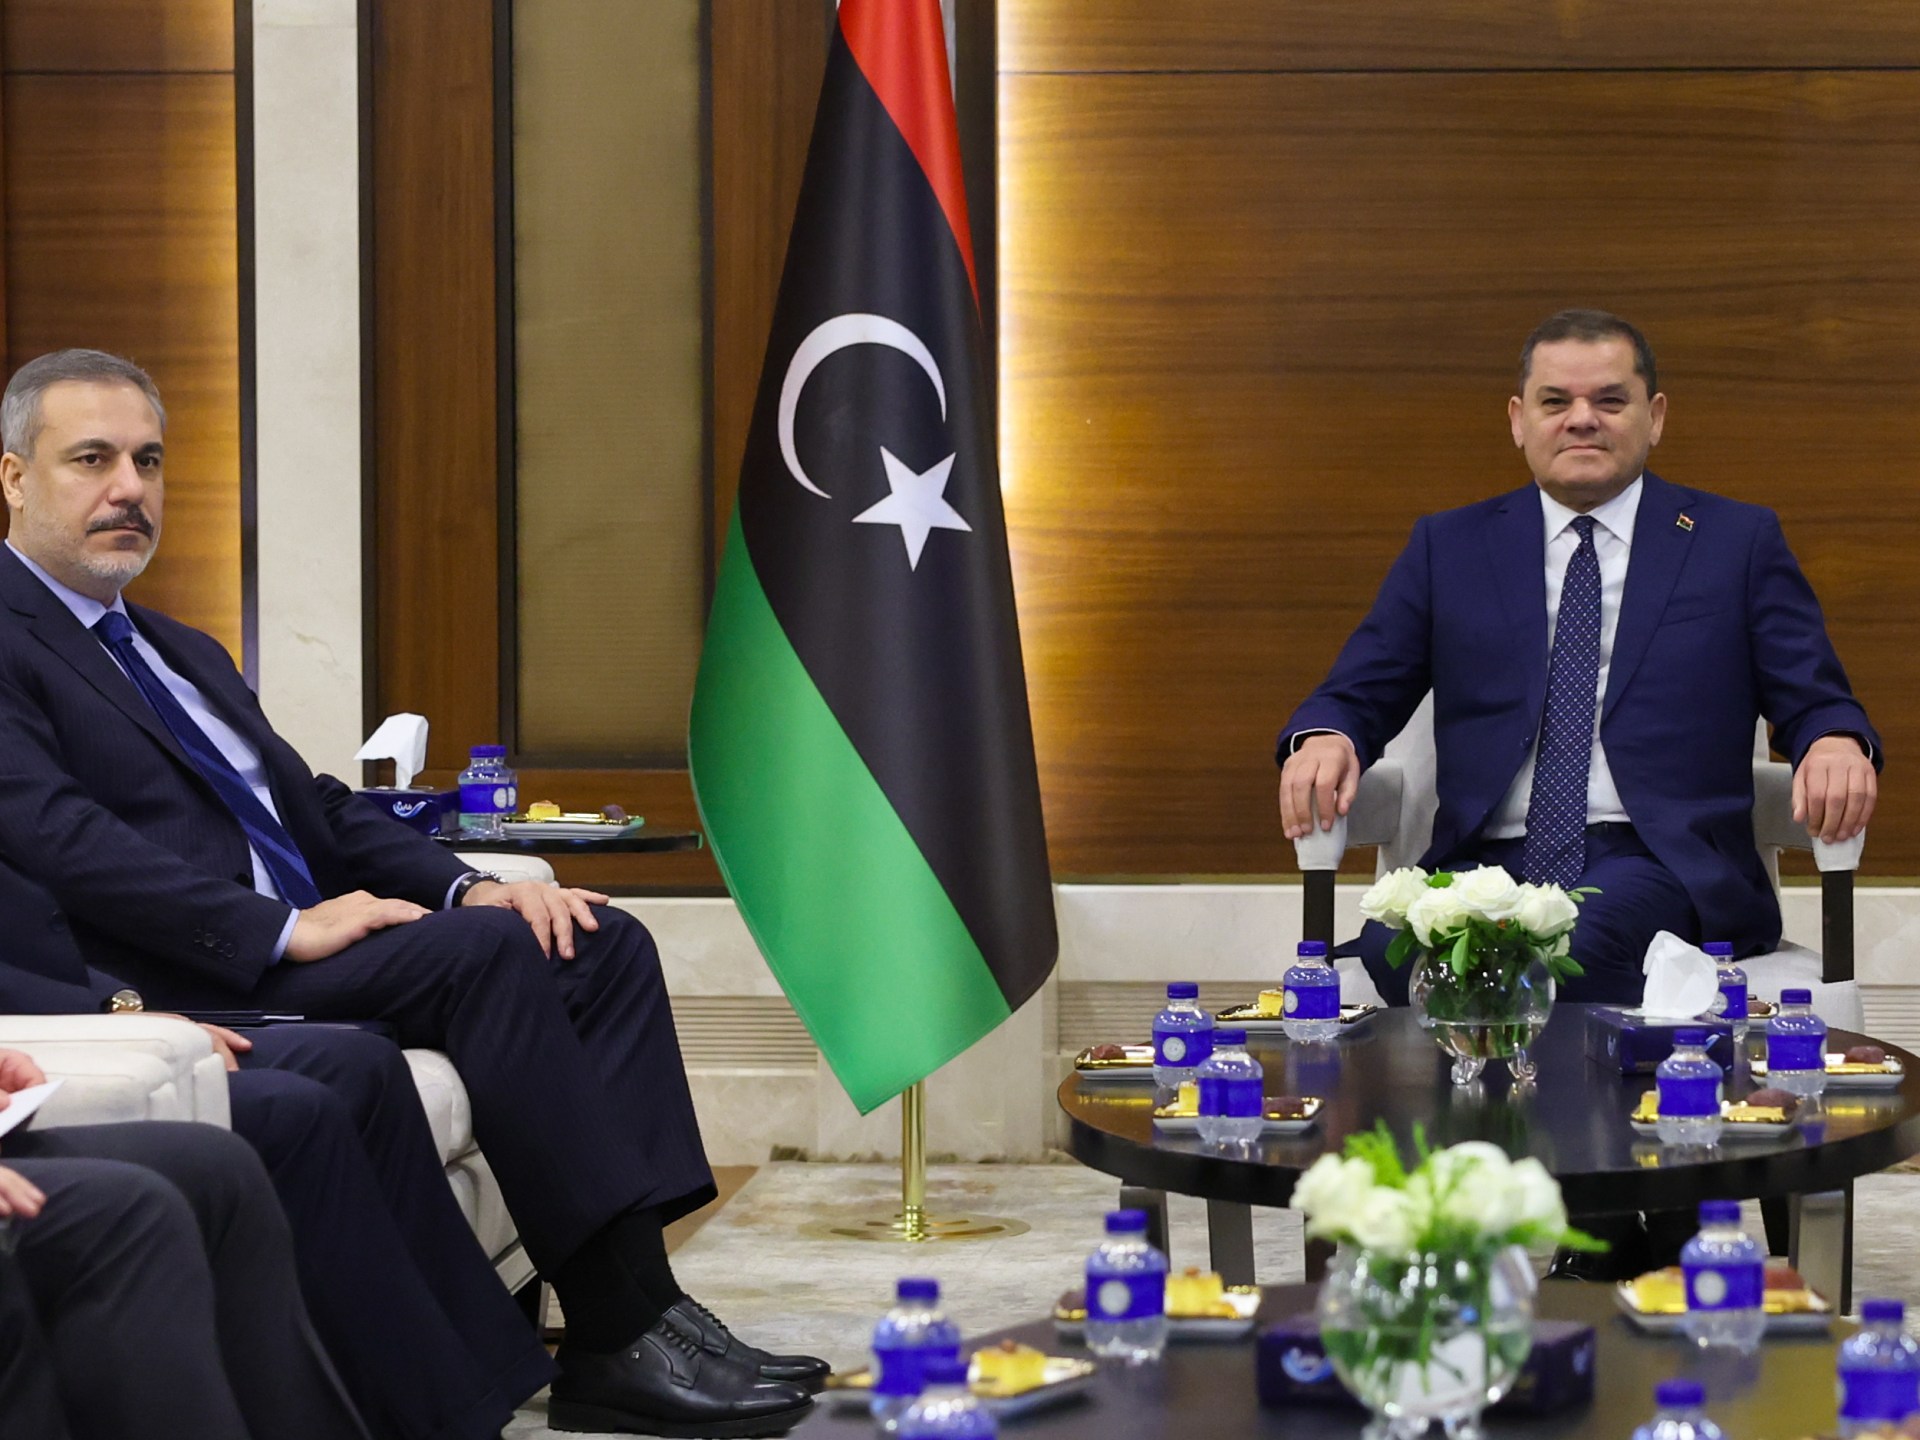 ليبيا وتركيا تبحثان العلاقات الثنائية وقضايا إقليمية | أخبار – البوكس نيوز